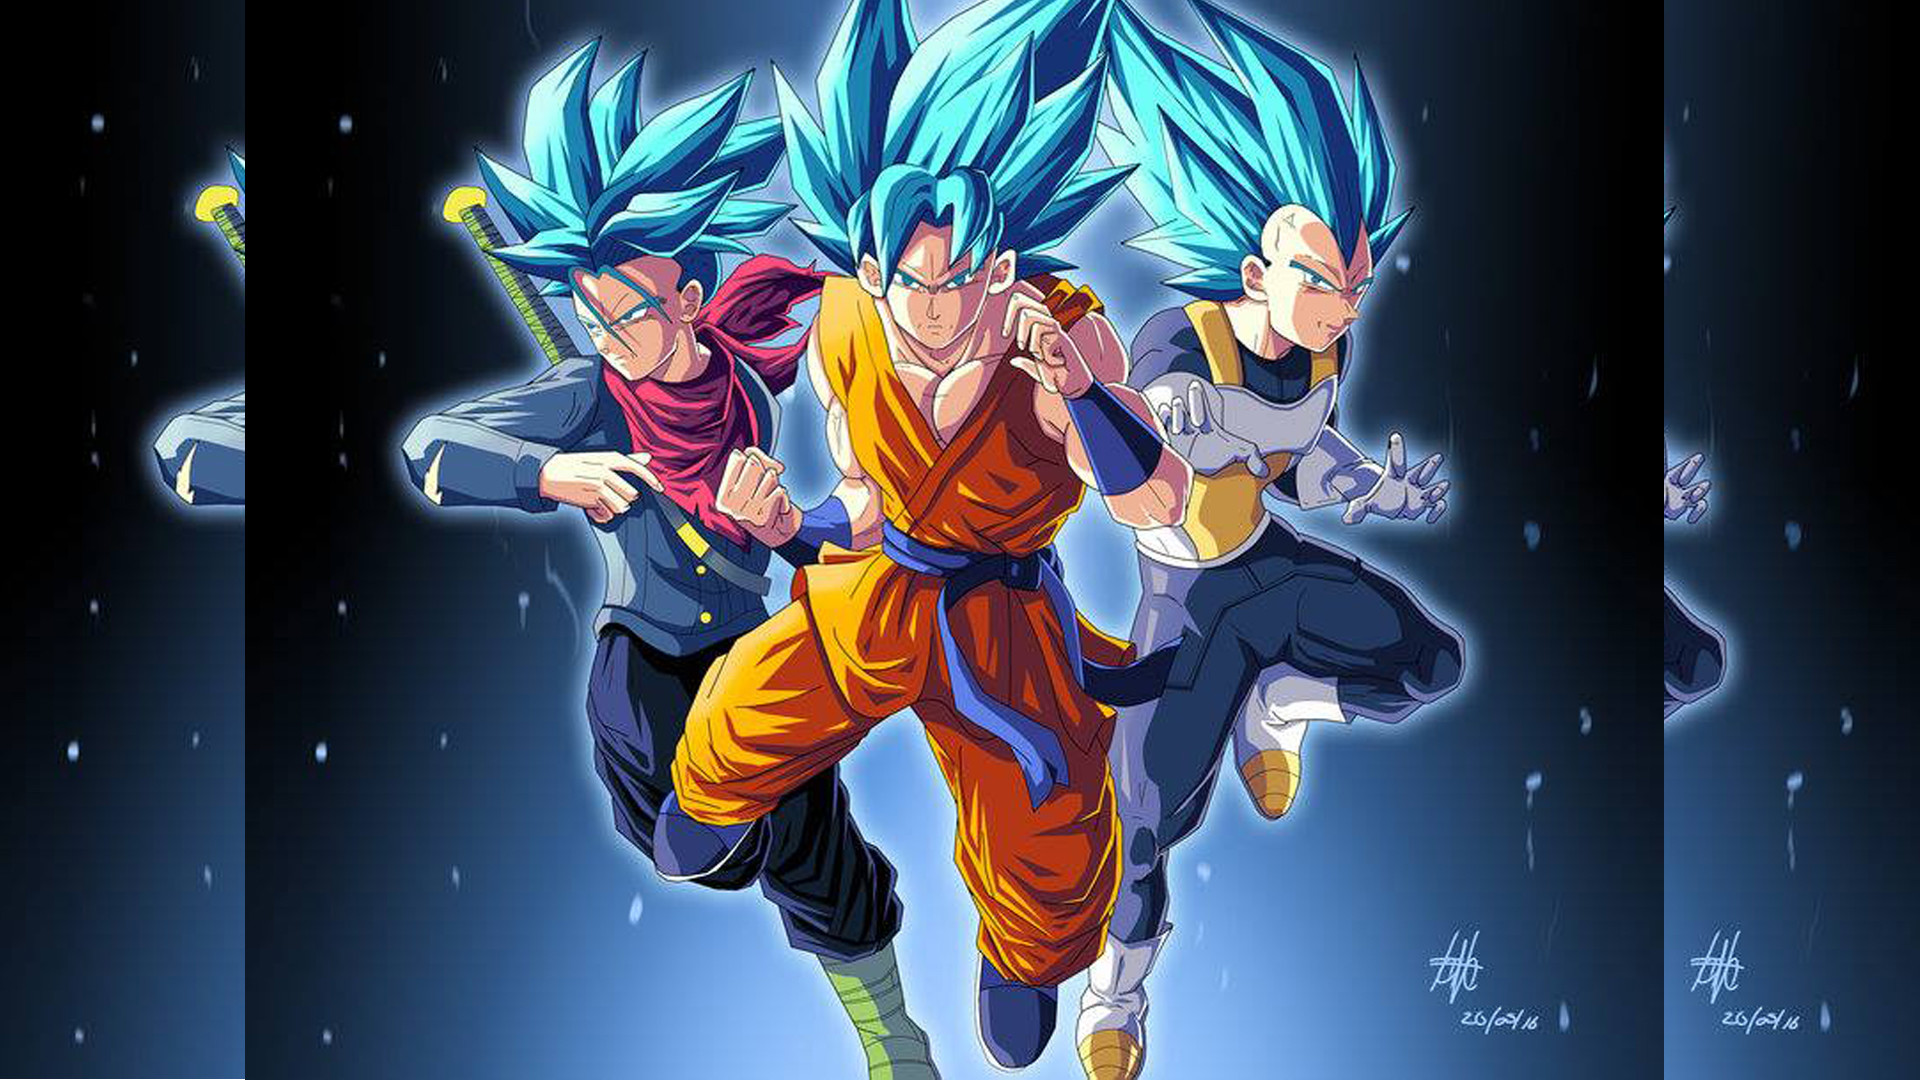 Vegeta Son Goku Saiyans Dragon Ball Z wallpaper, 1600x1200, 311949